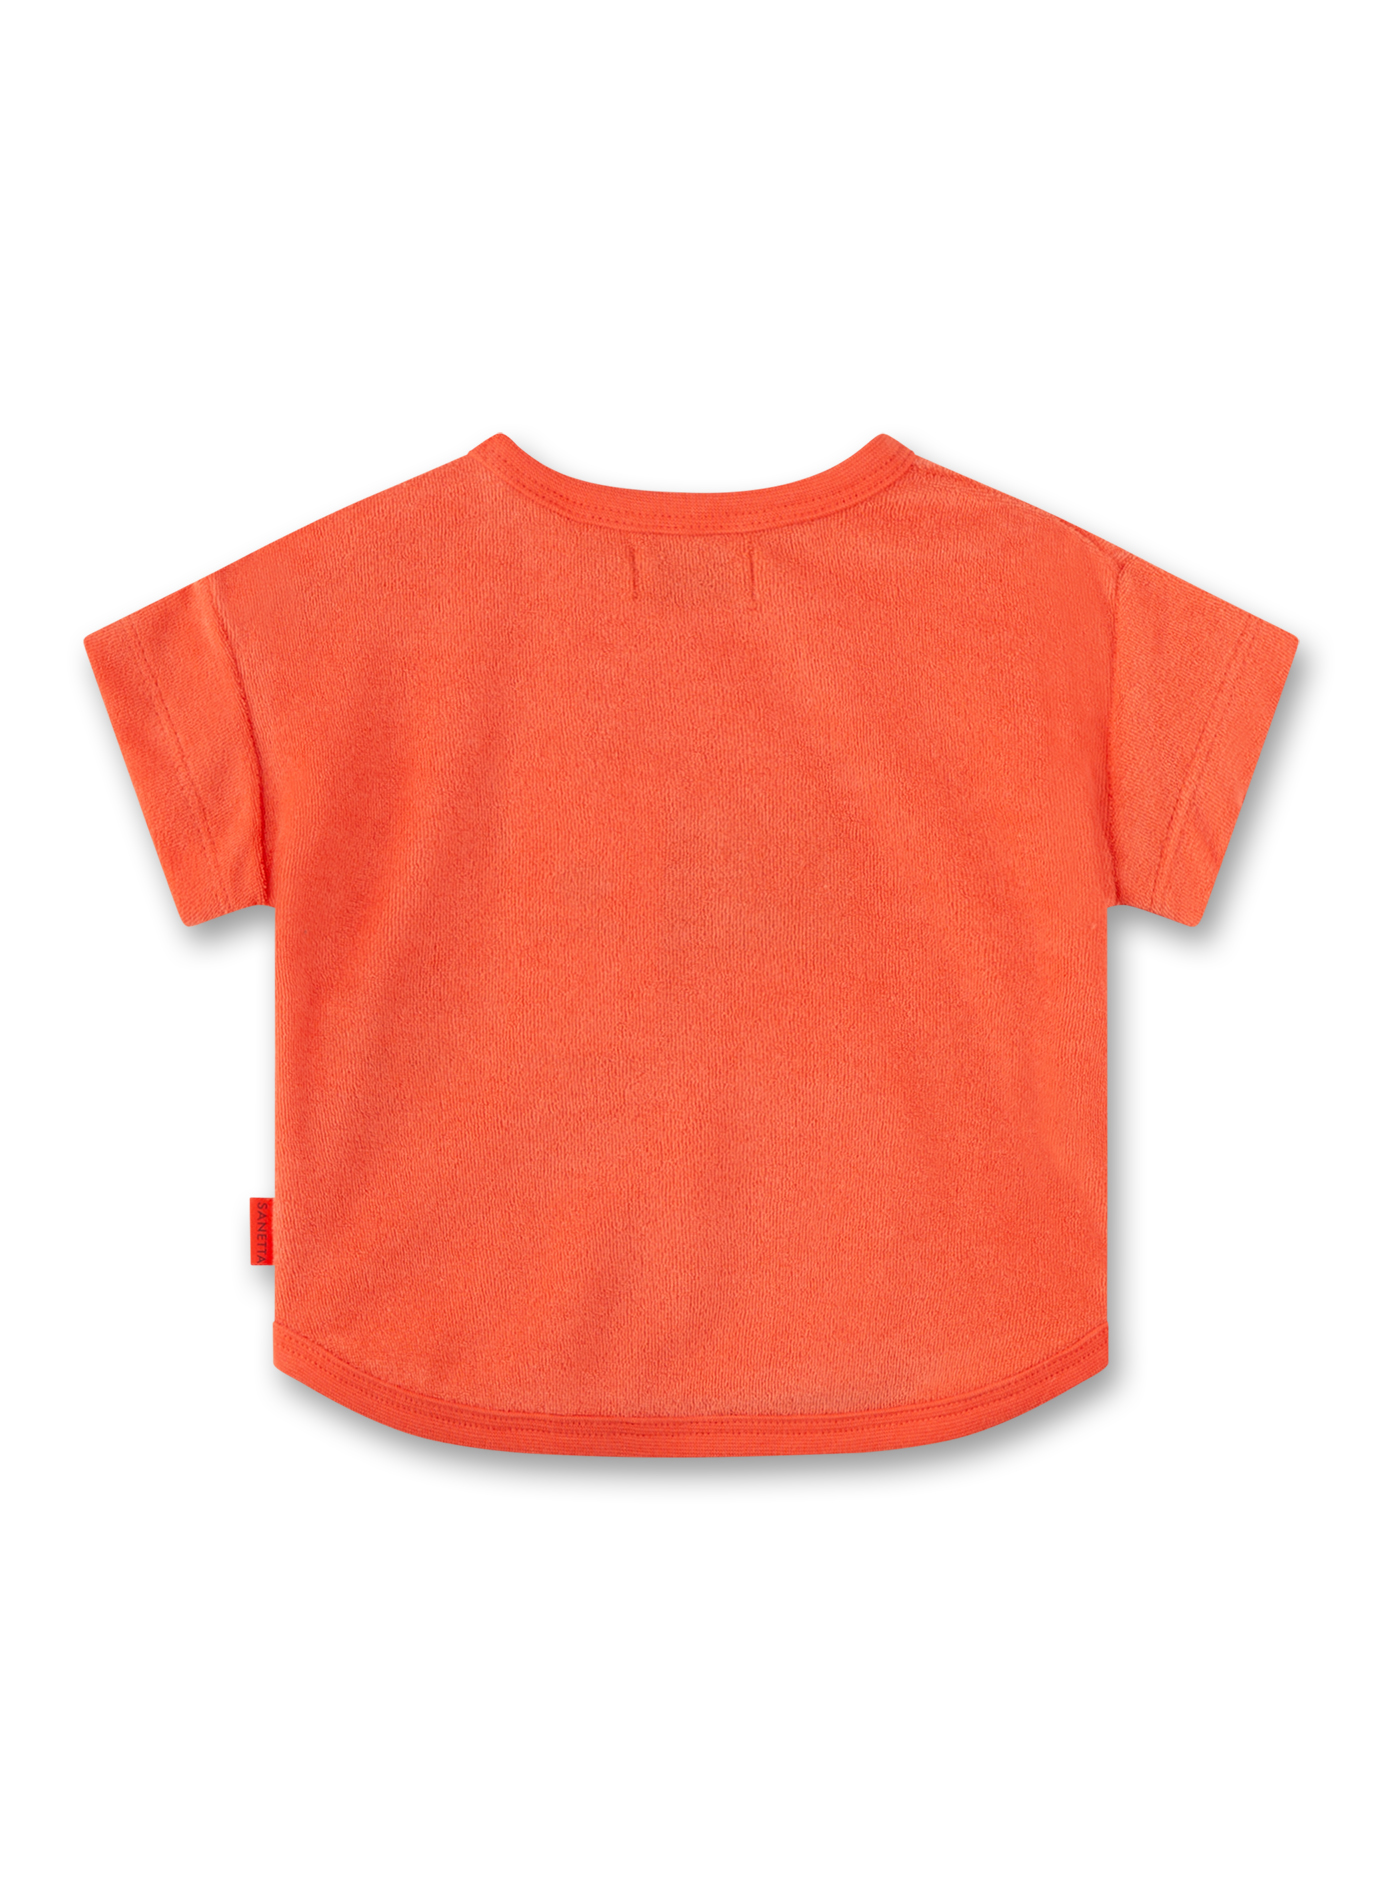 Jungen-Sweatshirt kurzarm Orange aus Frottee